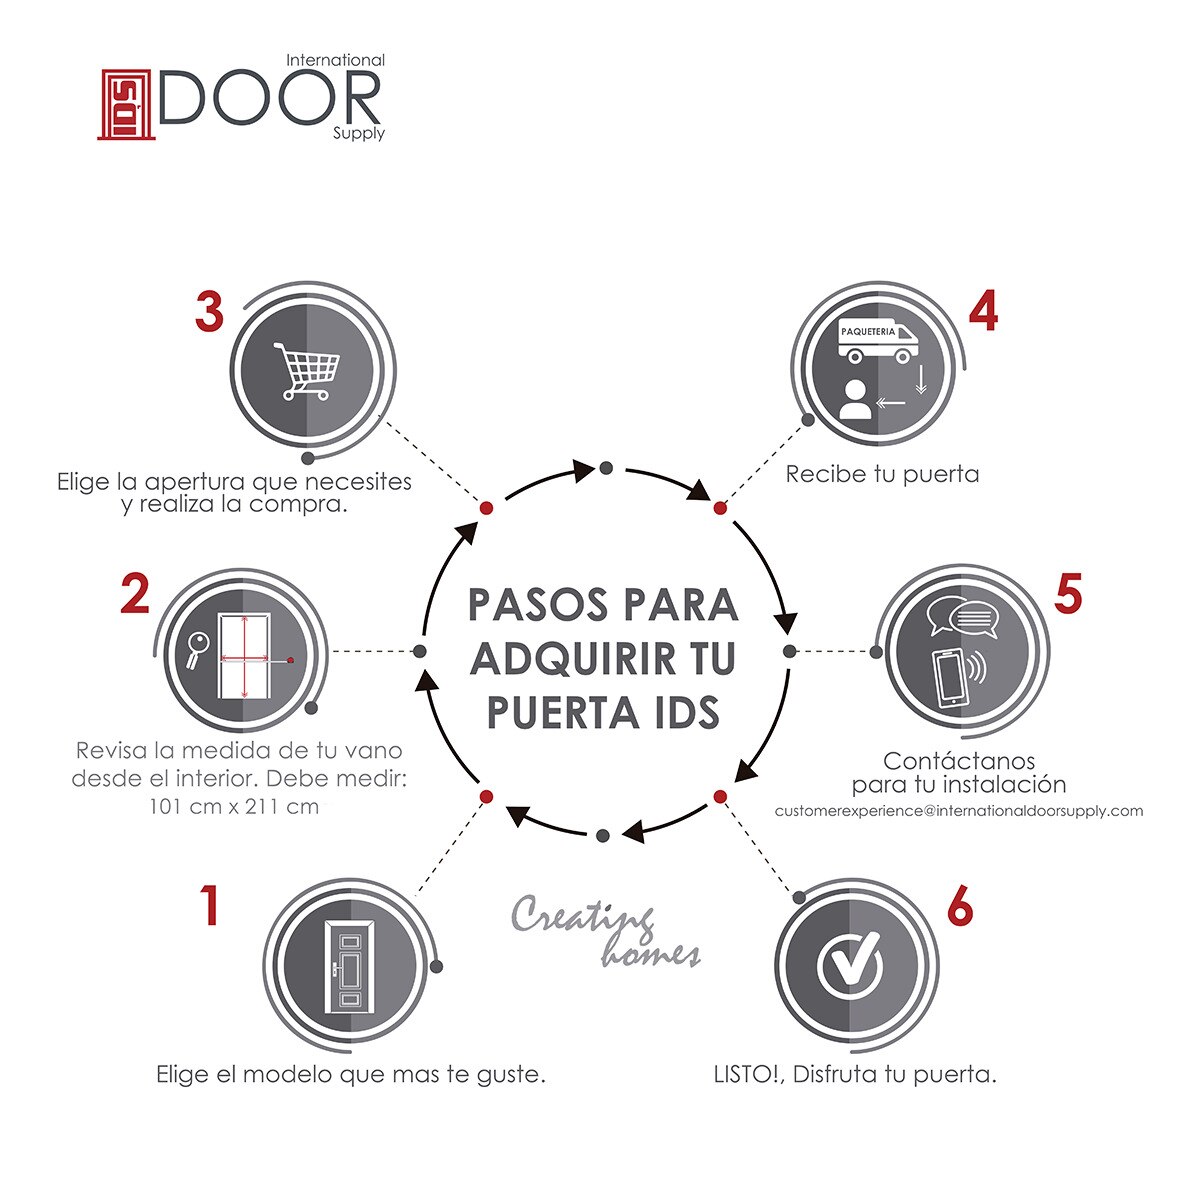 International Door Supply, Puerta de Alta Seguridad Magnum 9 mm Izquierda - Grado Balístico